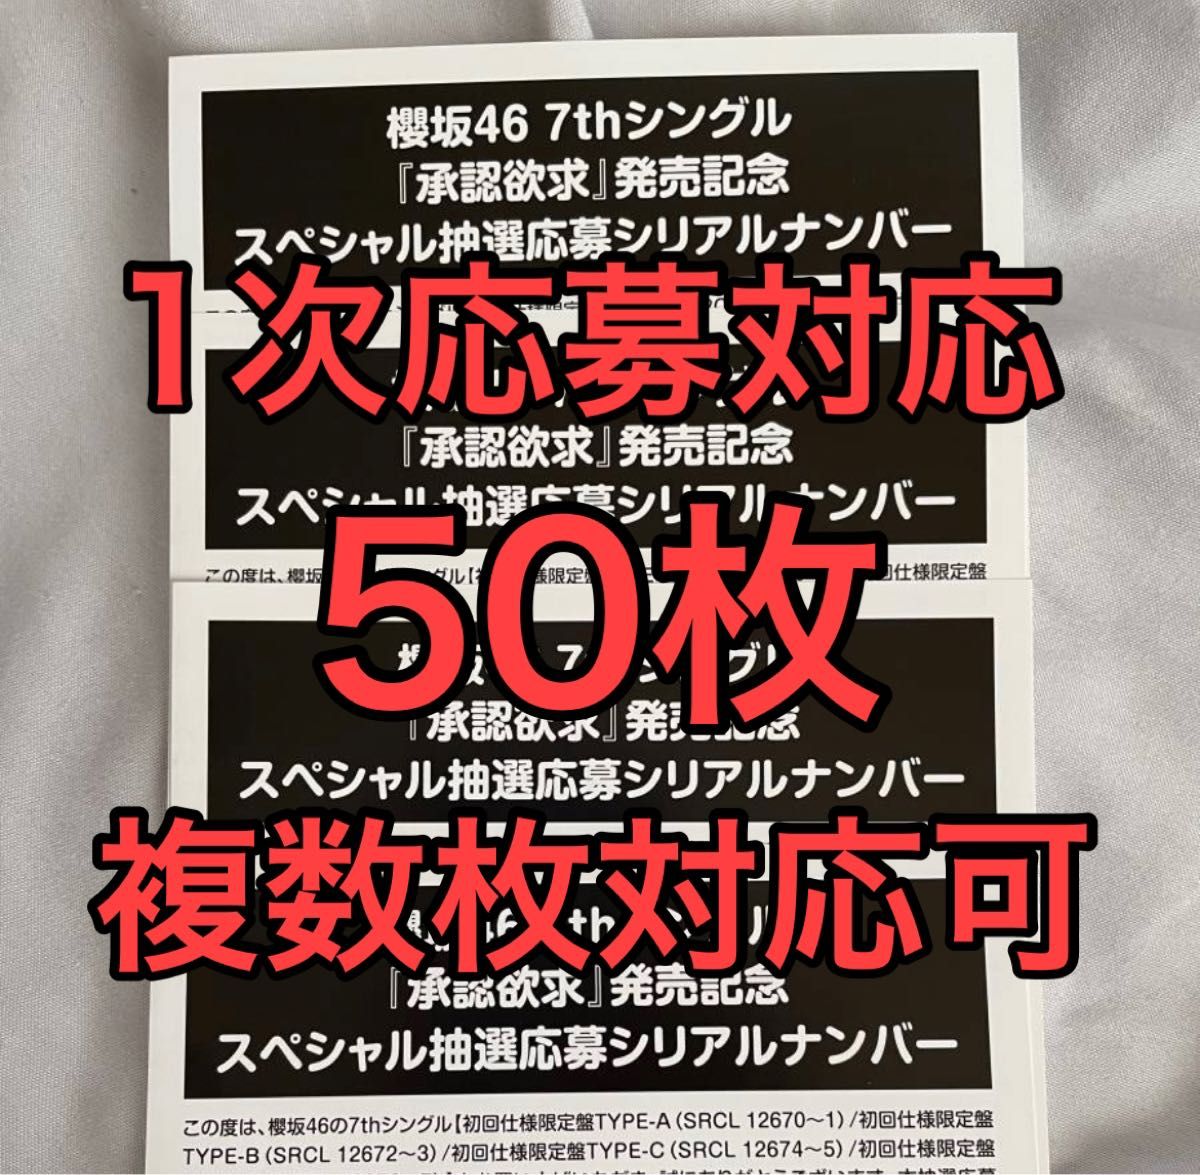 櫻坂46 7th Single 承認欲求 初回限定盤 応募券 シリアルナンバー 50枚